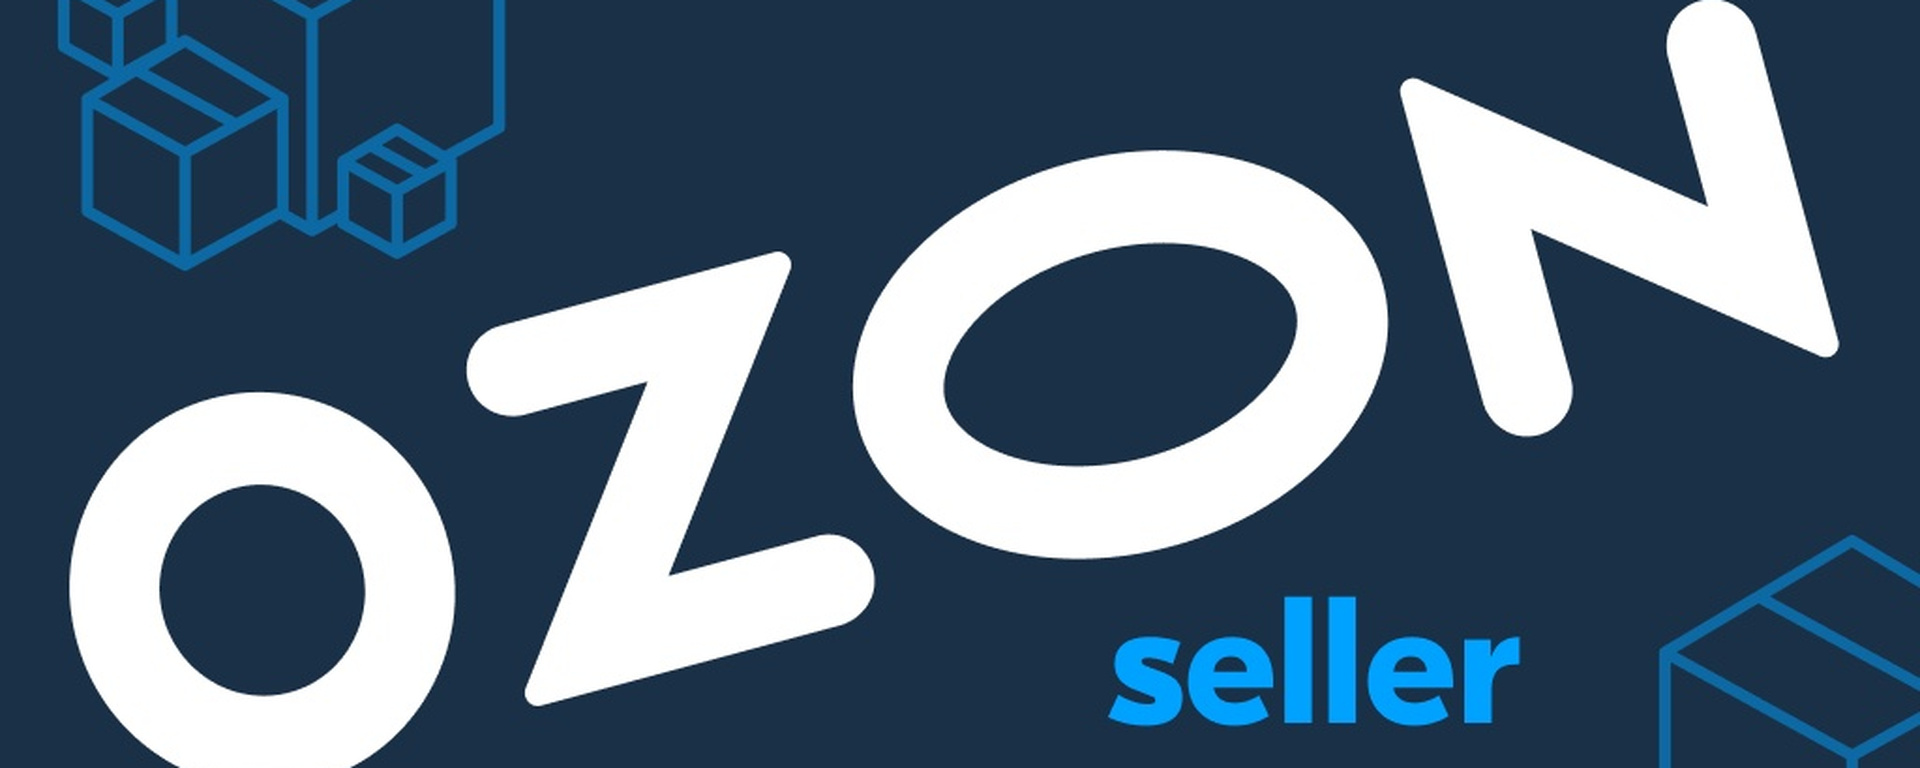 Озон арк. Озон seller. Озон логотип. OZON seller логотип.